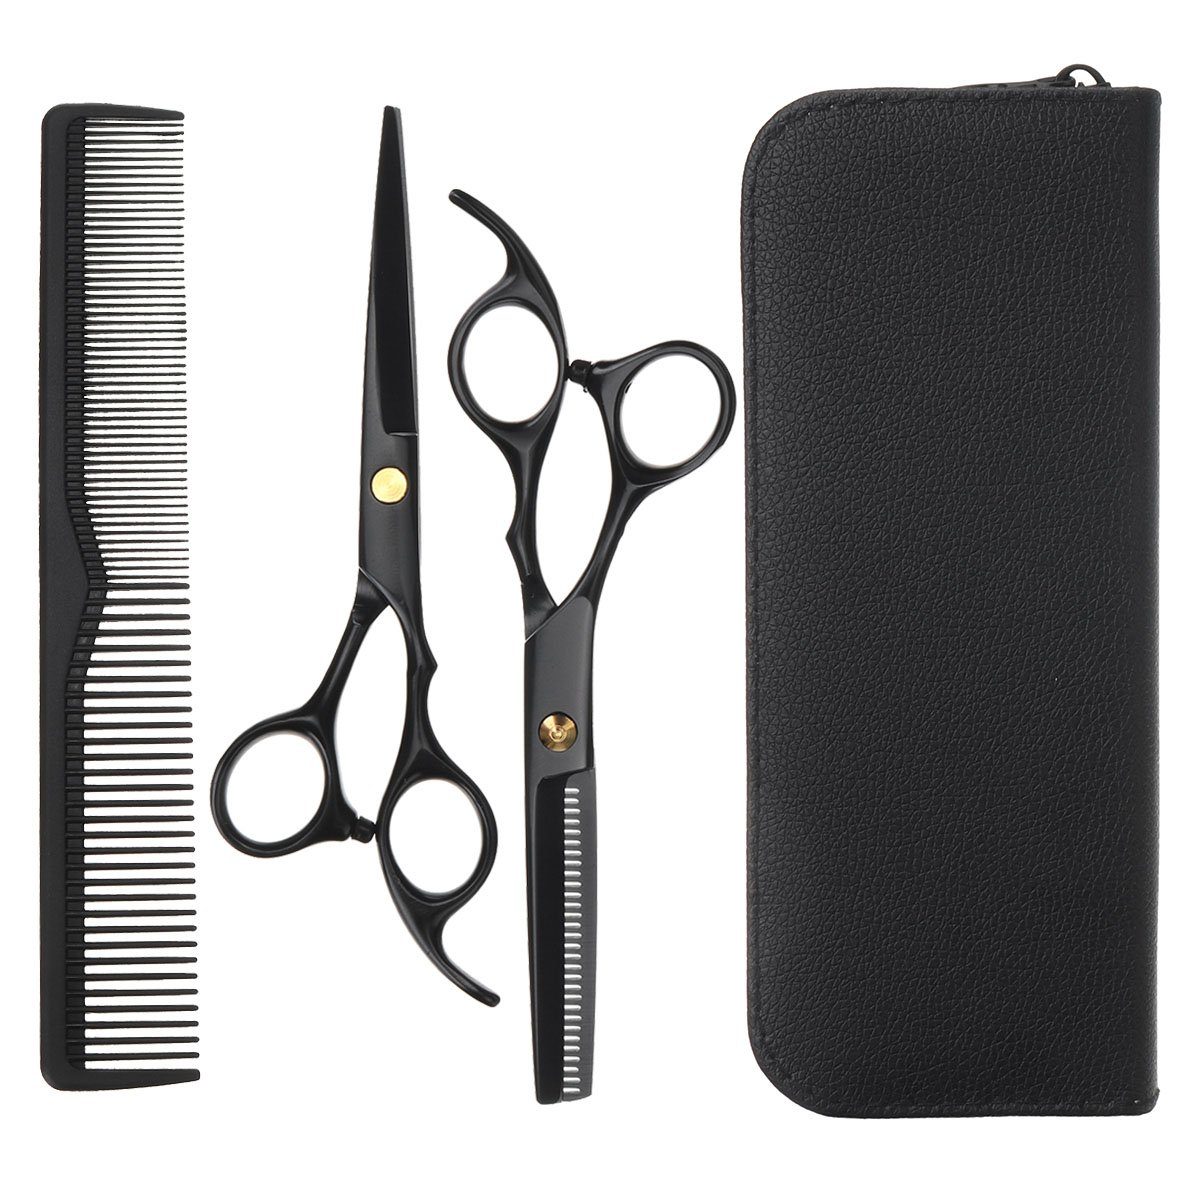 NASUM Haarschere Professionelles Qualitäts-Friseurscheren-Set, ausgewählte Materialien für besondere Hochwertigkeit